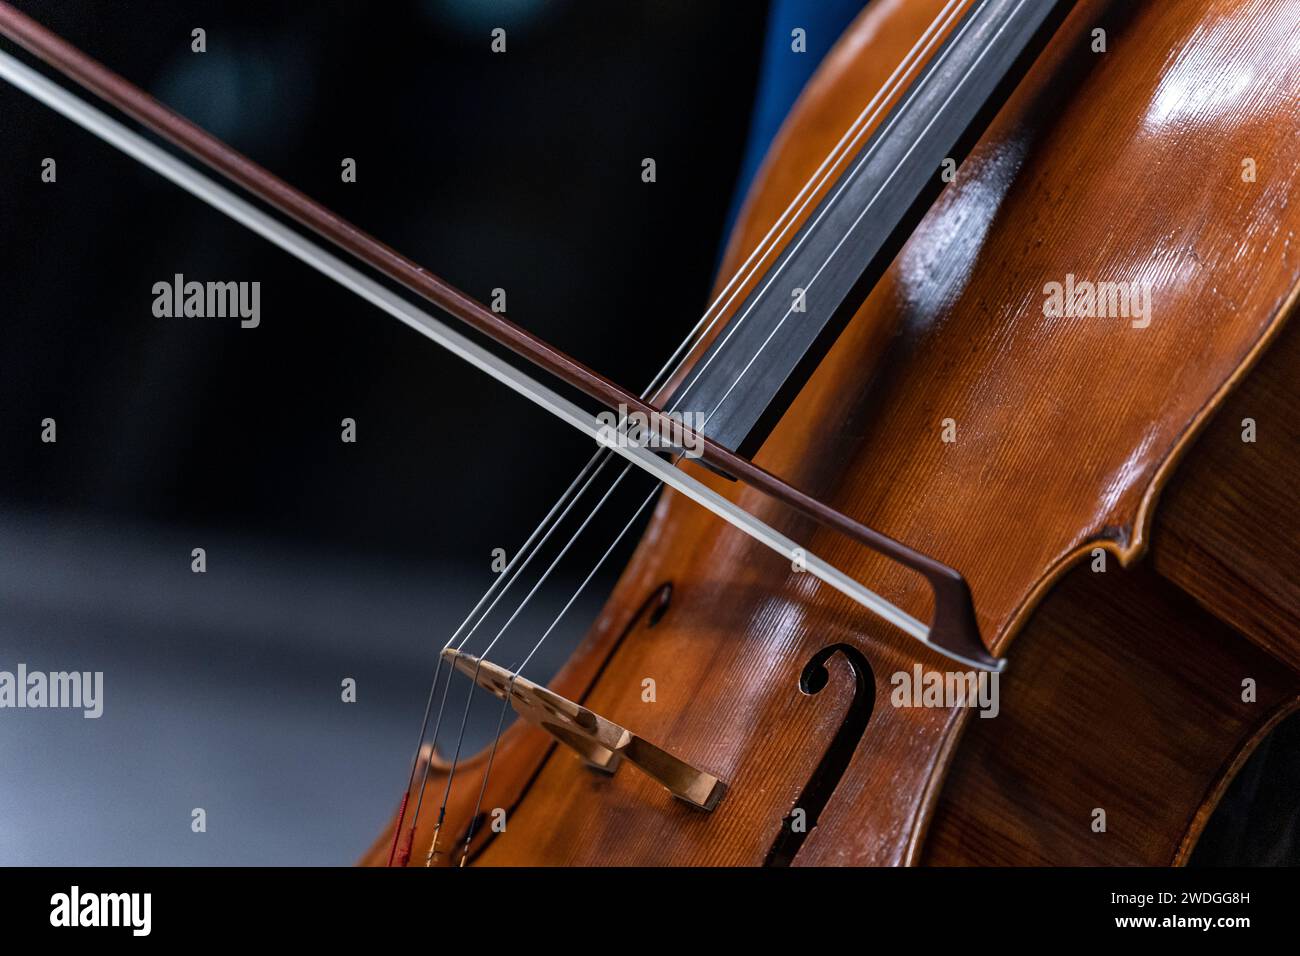 Gros plan des cordes et de l'arc d'un violoncelle Banque D'Images